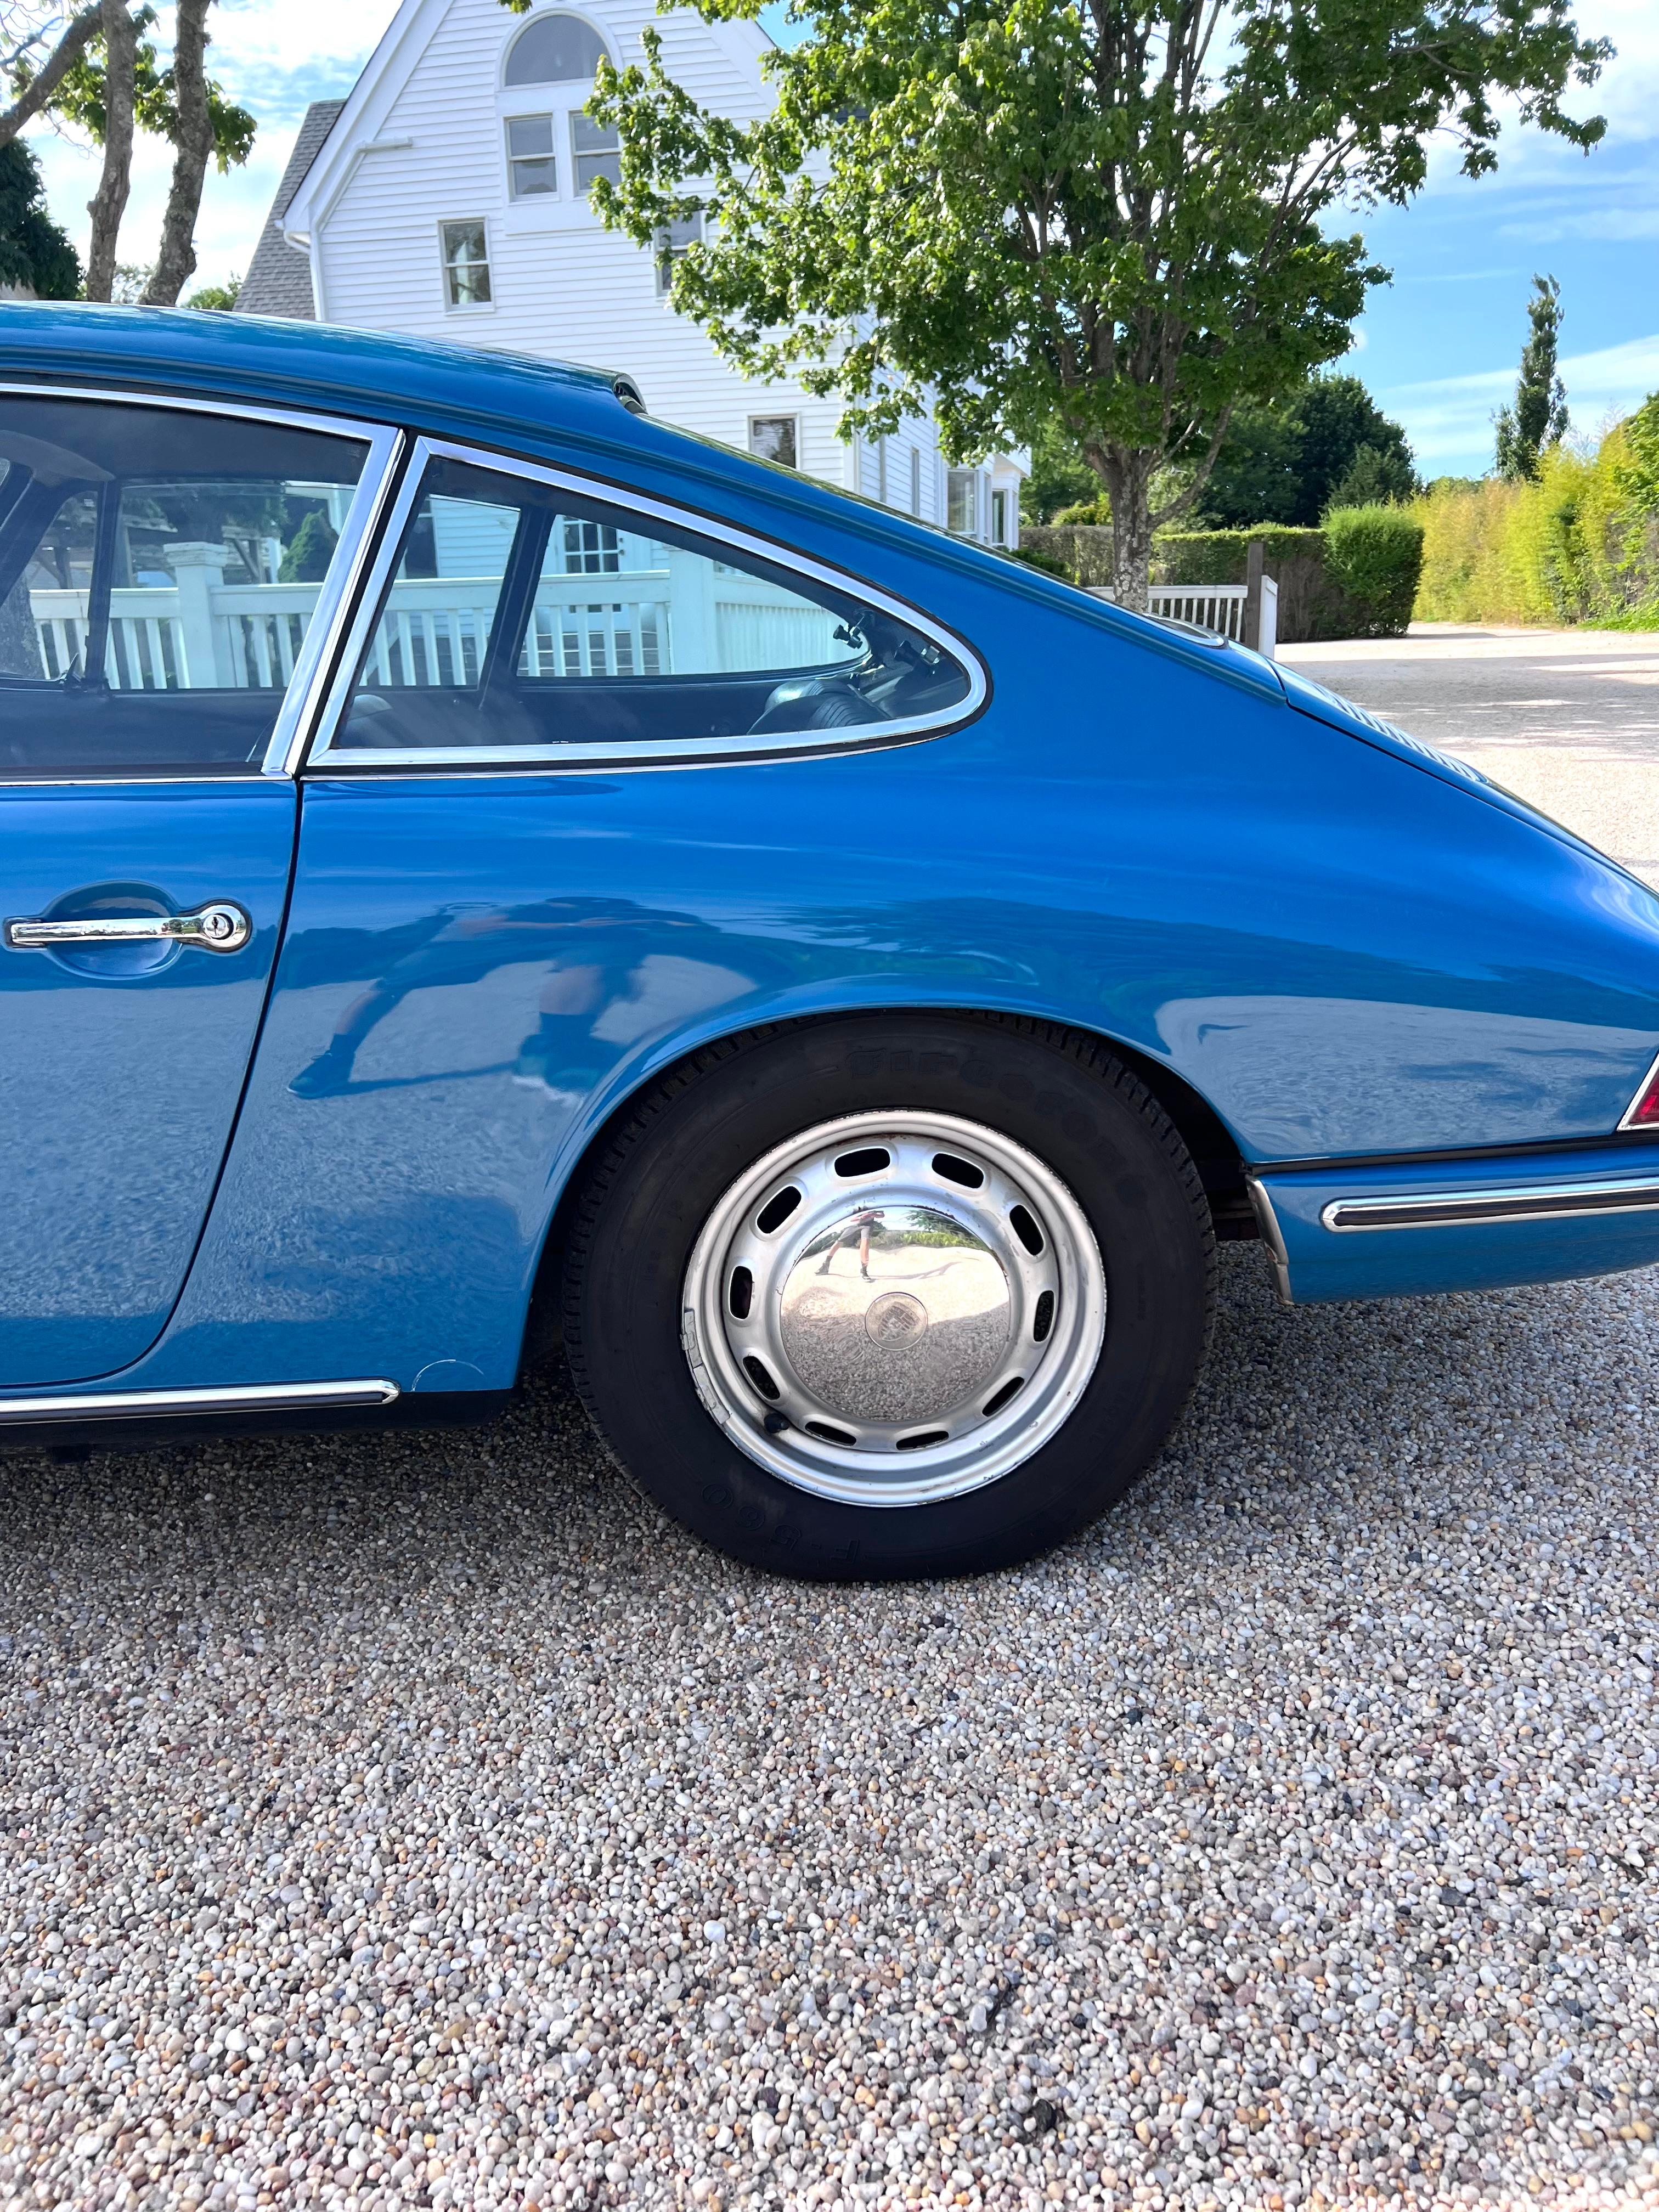 Steel 1967 Aga Blue 5-Speed Porsche 912 For Sale